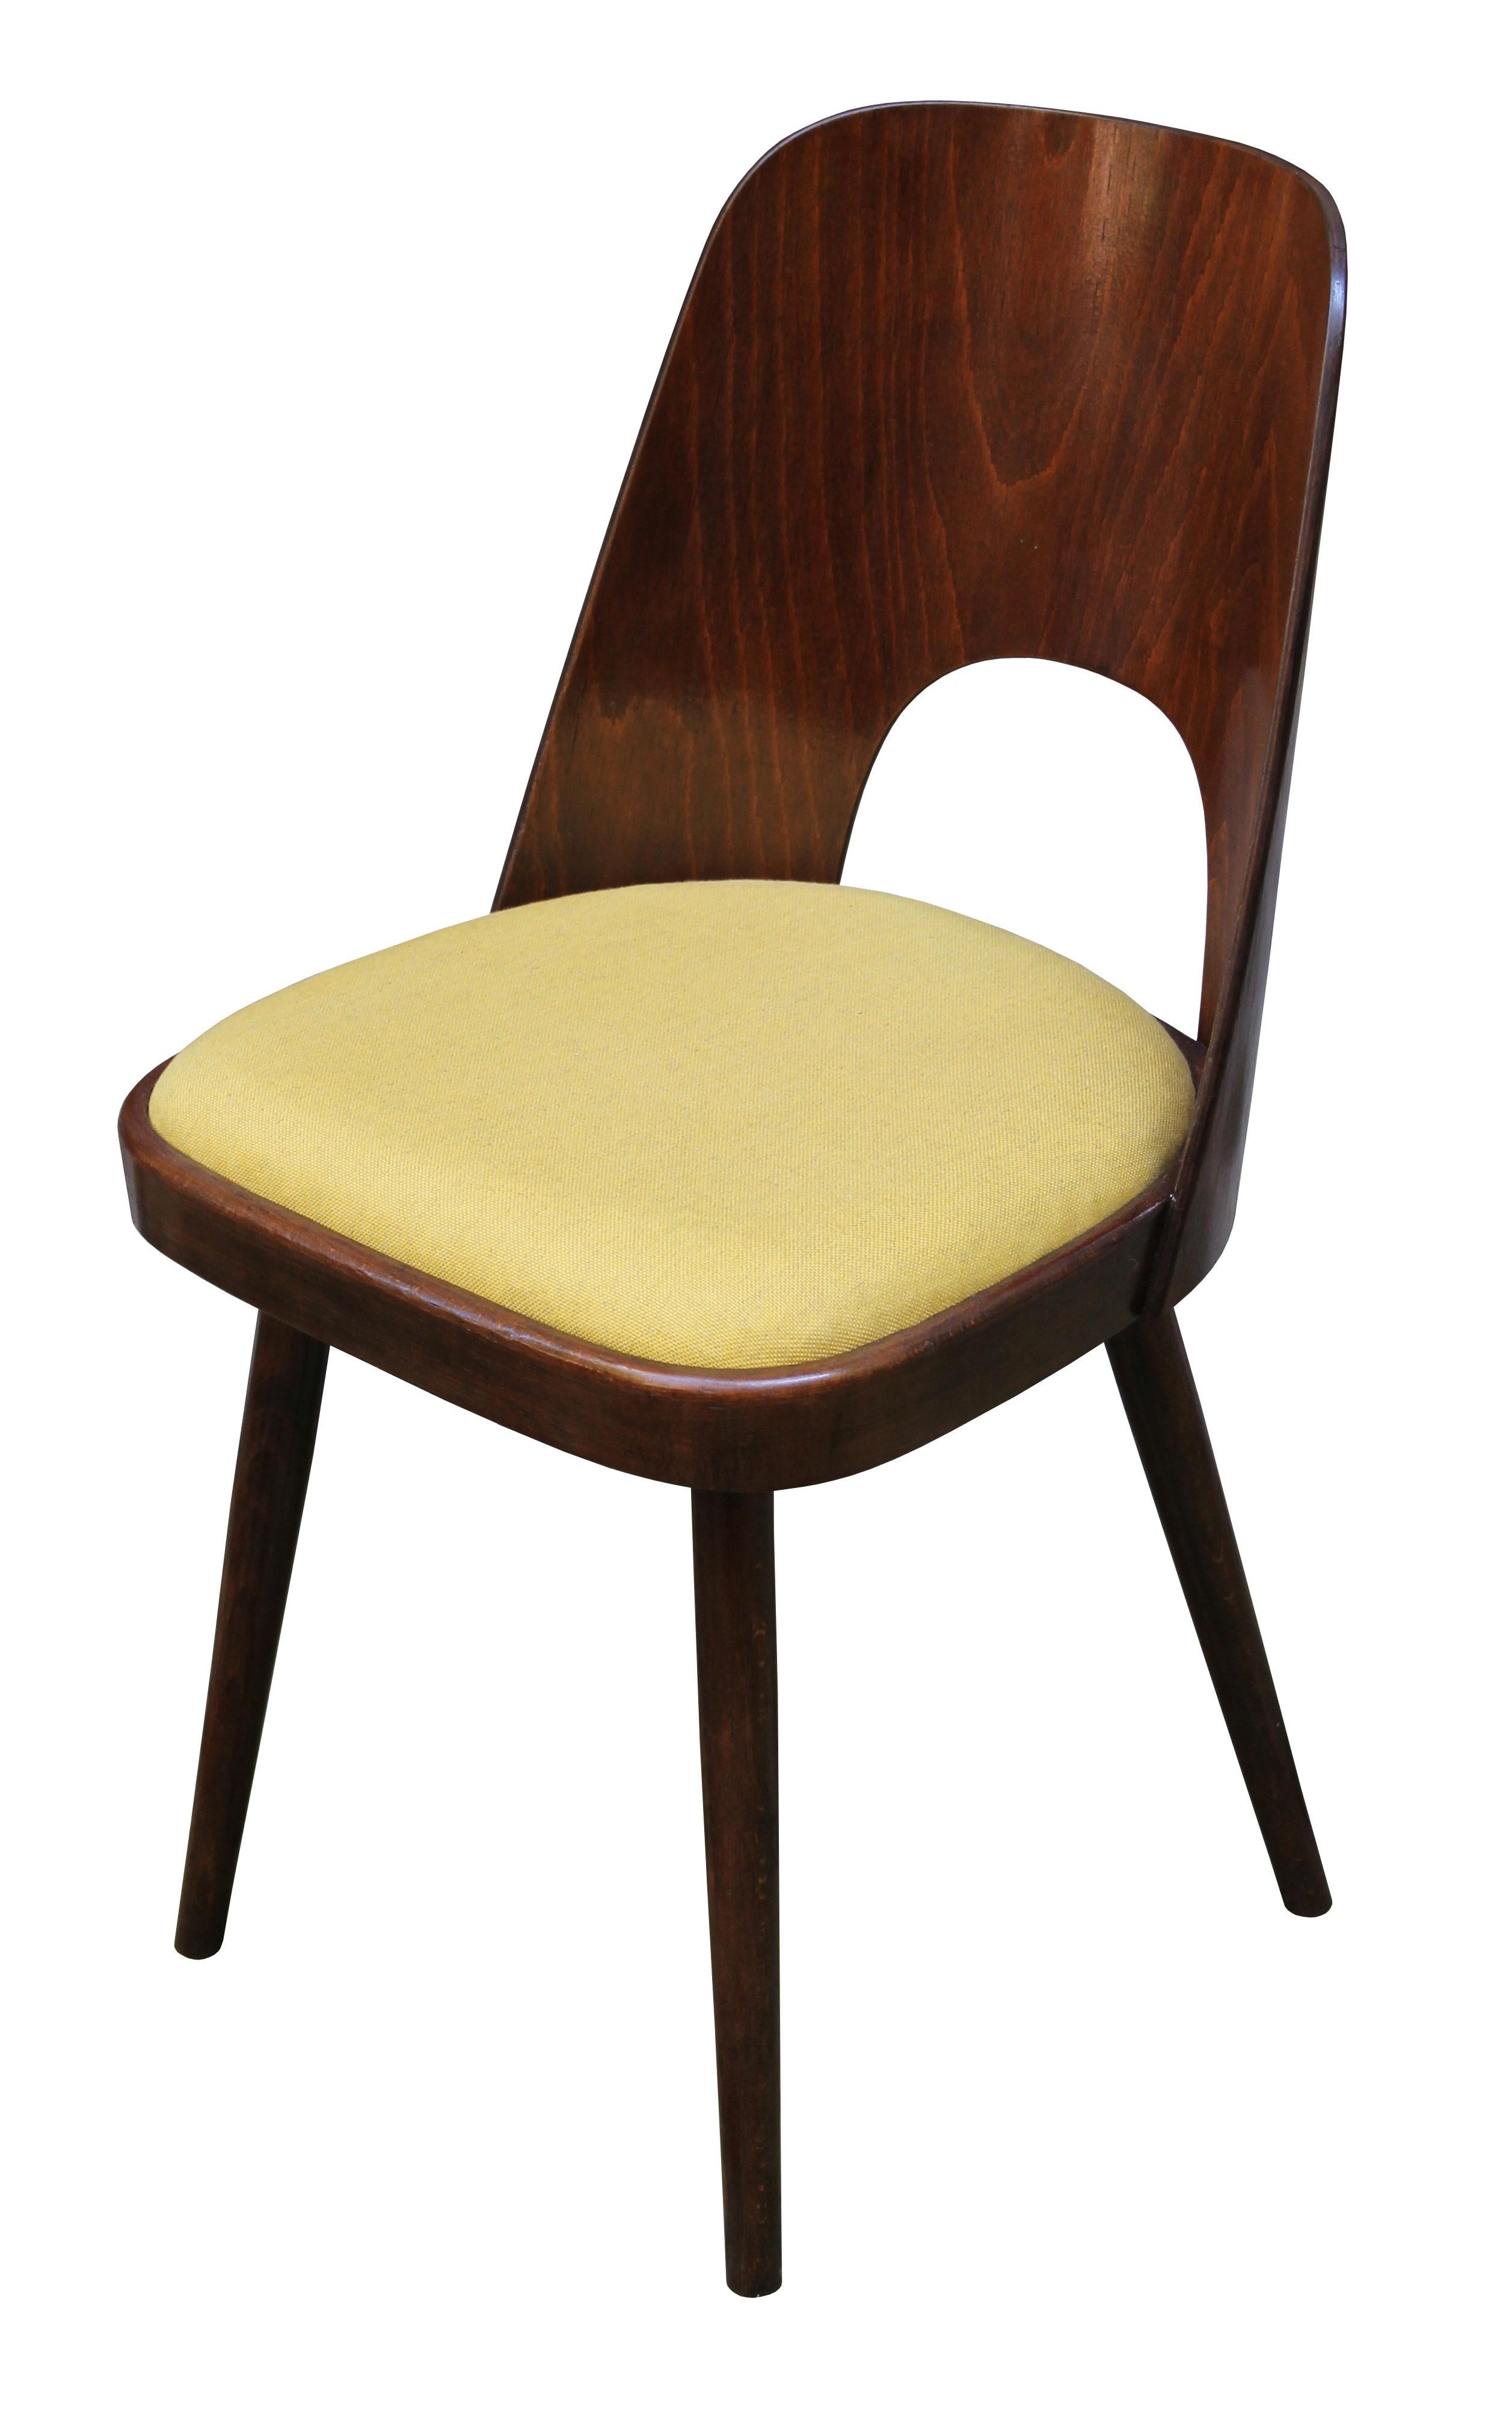 Oswald Haerdtl, einer der einflussreichsten österreichischen Architekten des 20. Jahrhunderts, entwarf diesen ikonischen Stuhl im Jahr 1955 mit der schlichten Bezeichnung 